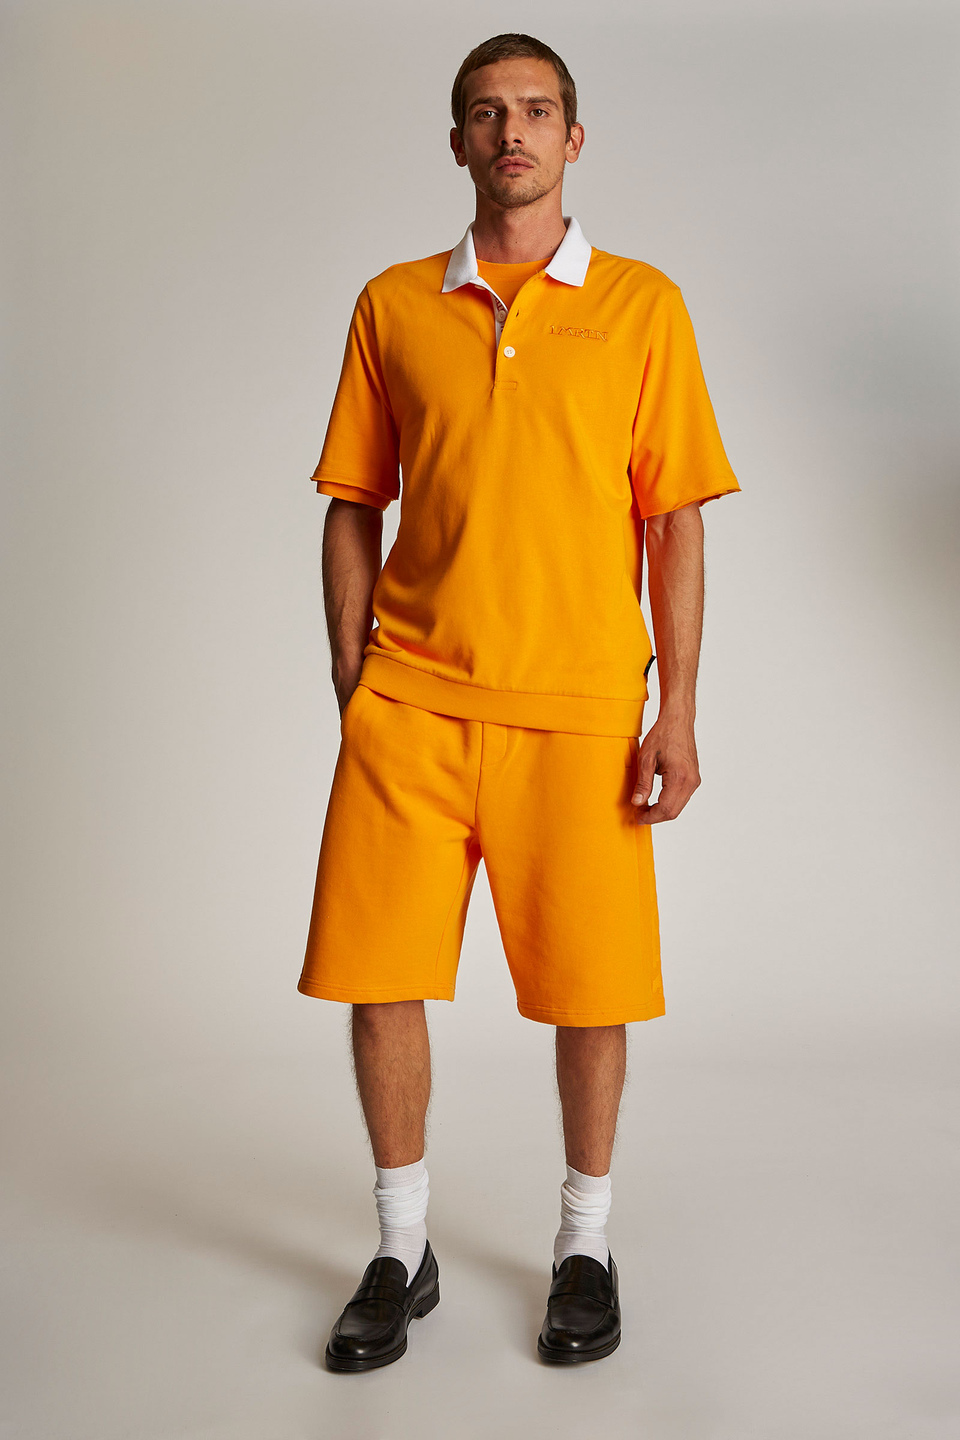 Herren-Poloshirt mit kurzem Arm und einem Kragen in Kontrastoptik, oversized Modell - La Martina - Official Online Shop